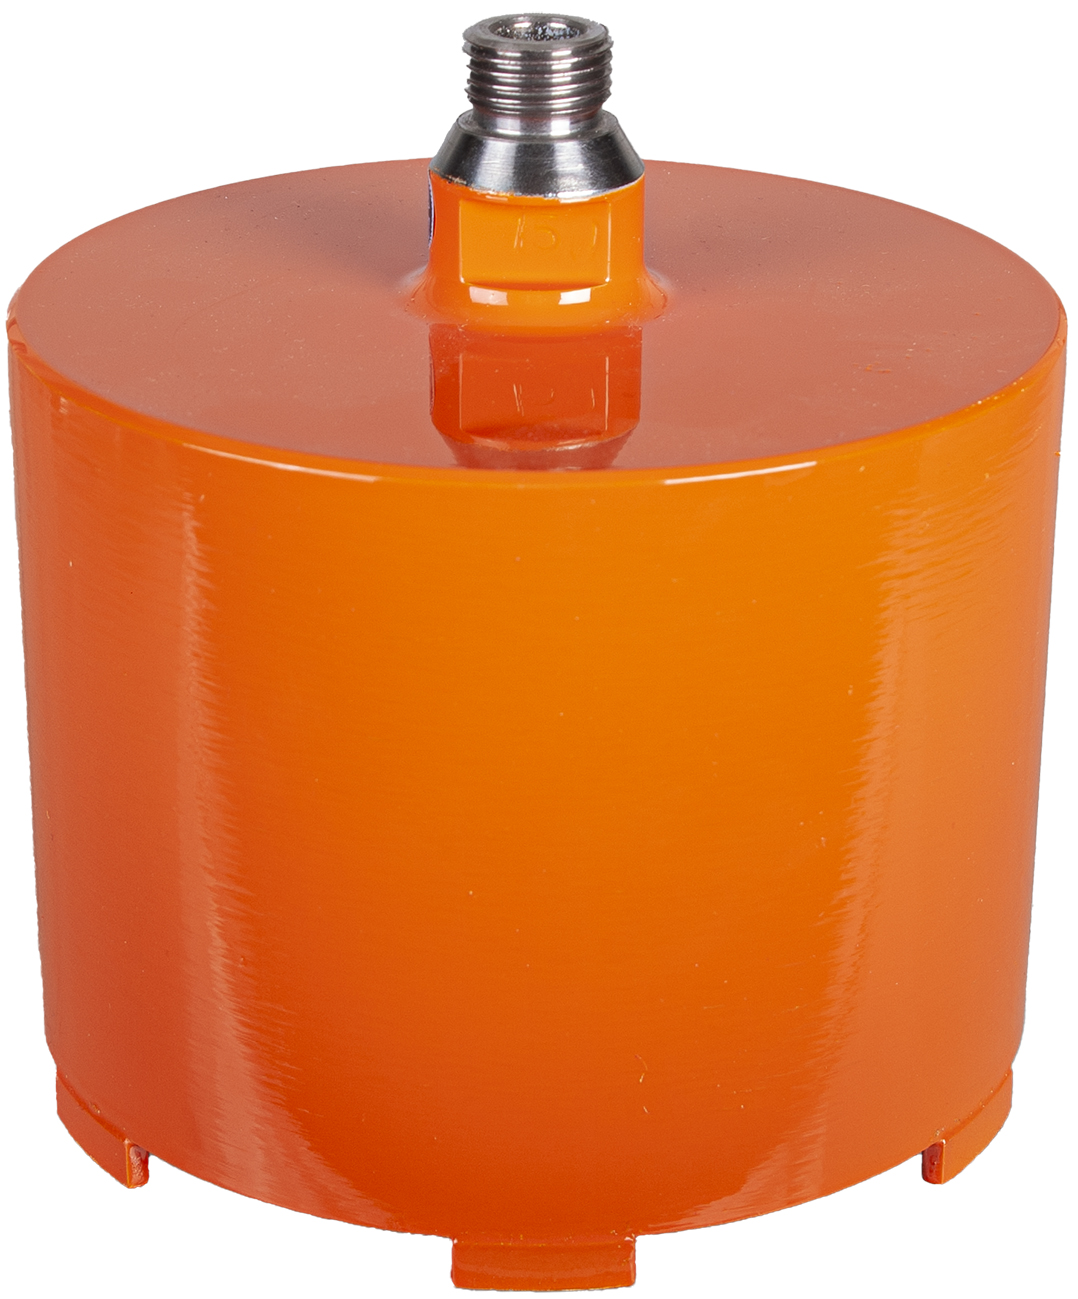 DIAREX Hohlbohrer Helix Orange ø 150 mm | Bohrtiefe 100 mm